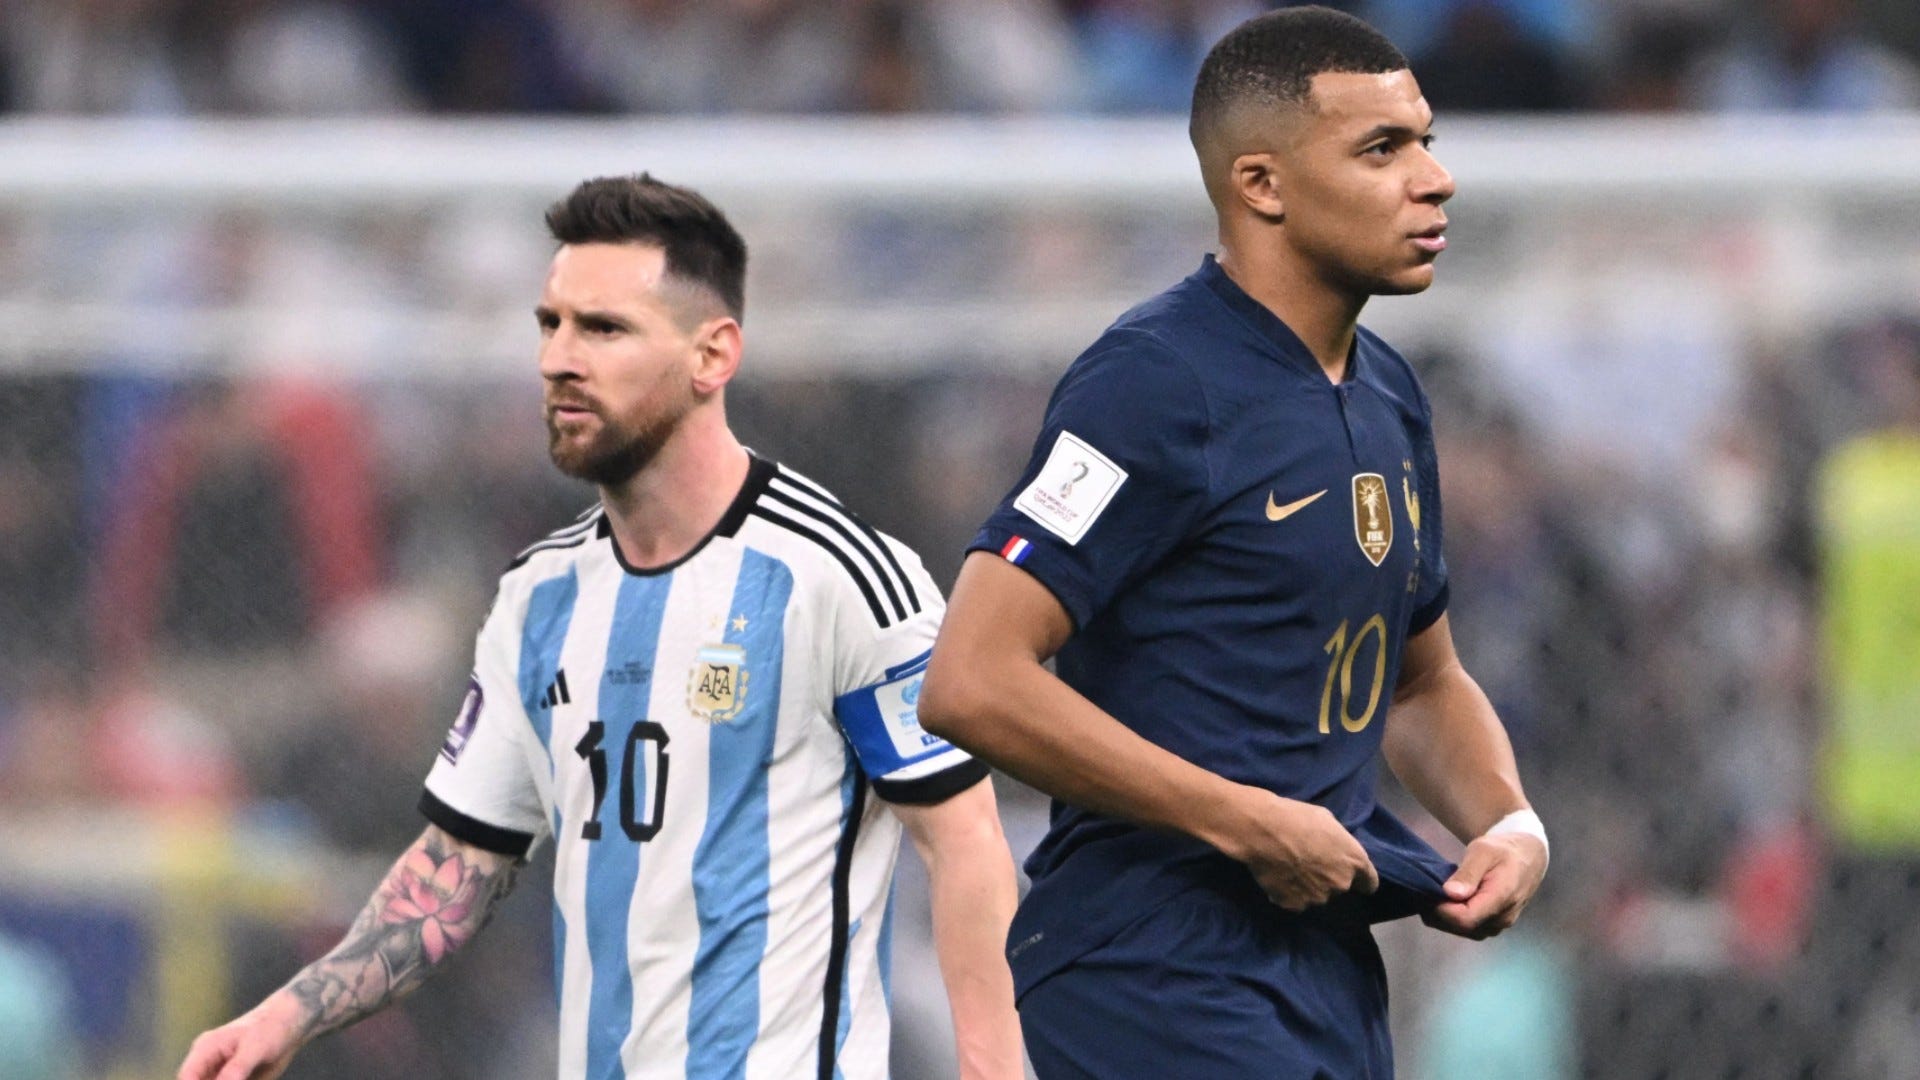 "L'Argentine mérite sa victoire contre la France" - Gourcuff très clair